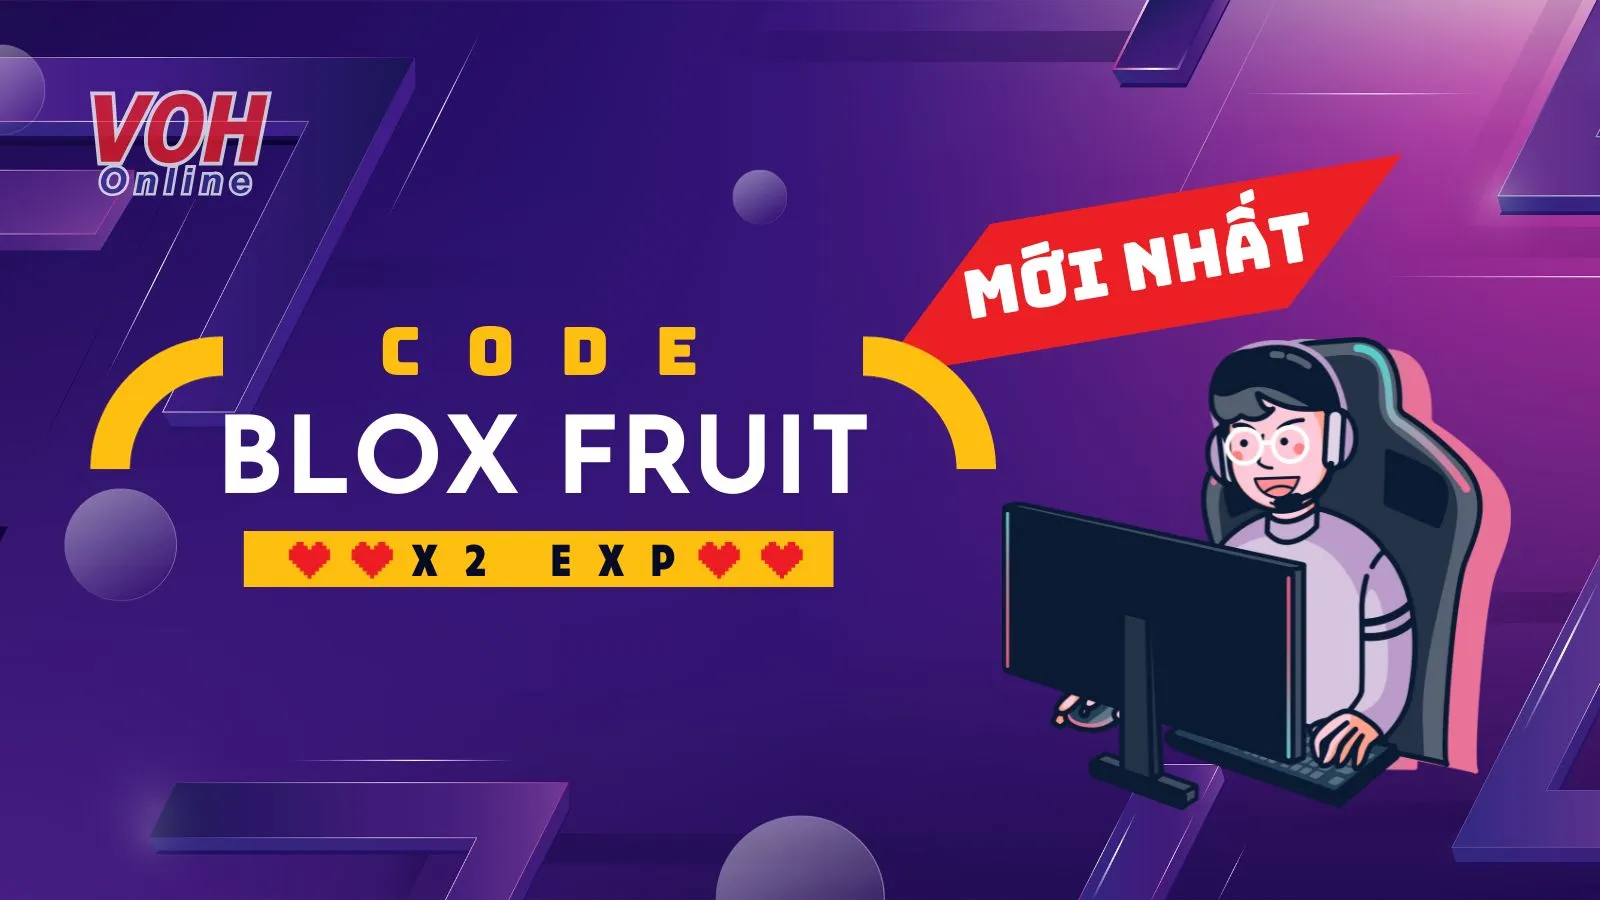 Code Blox Fruit x2 exp mới nhất tháng 10/2023: Cách nhập code Blox Fruit